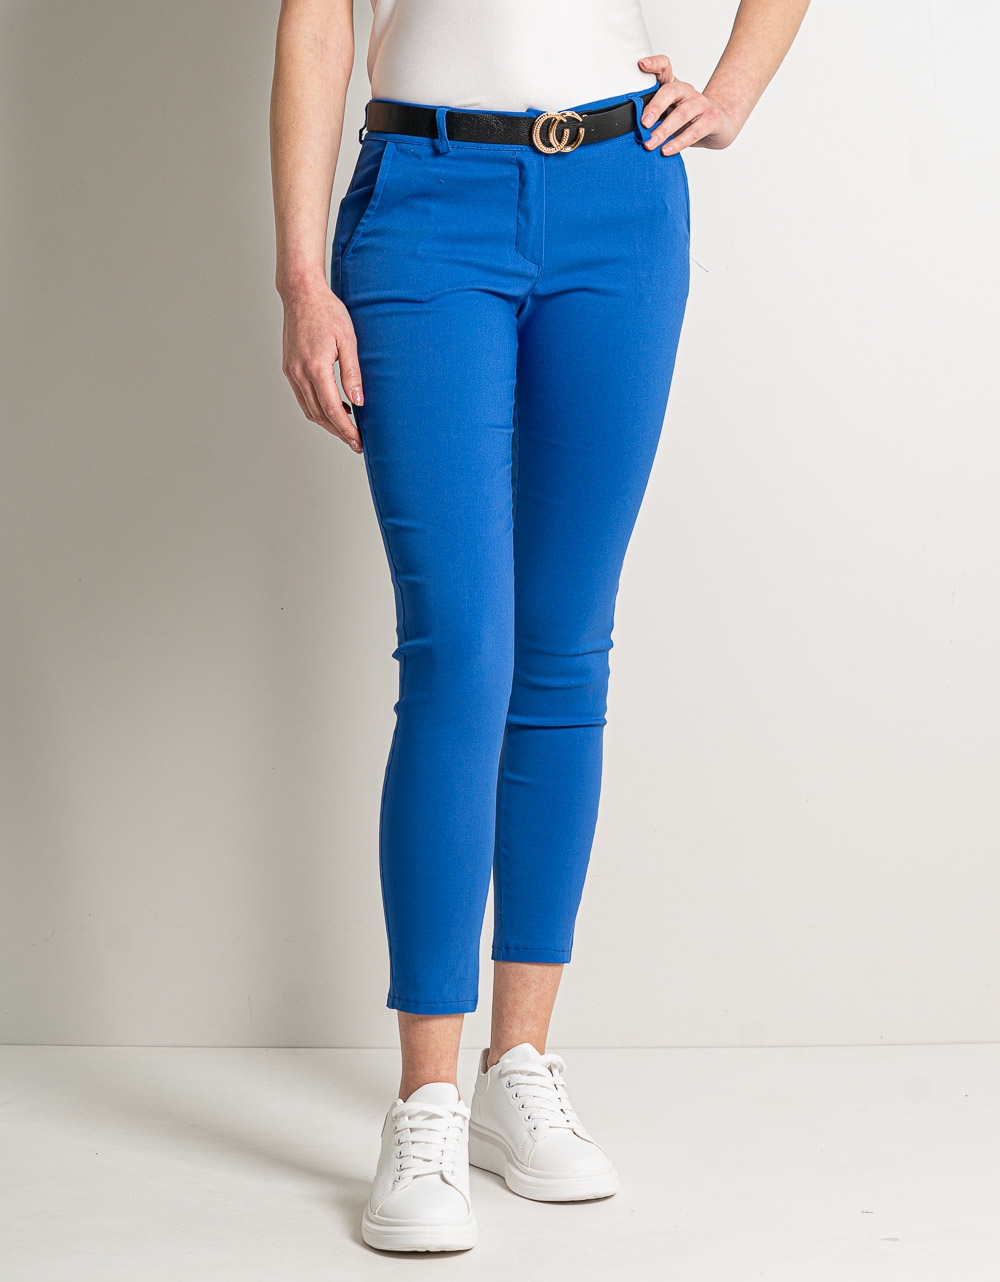 Εικόνα από Μονόχρωμο ελαστικό παντελόνι με τσέπες και ζώνη Μπλε